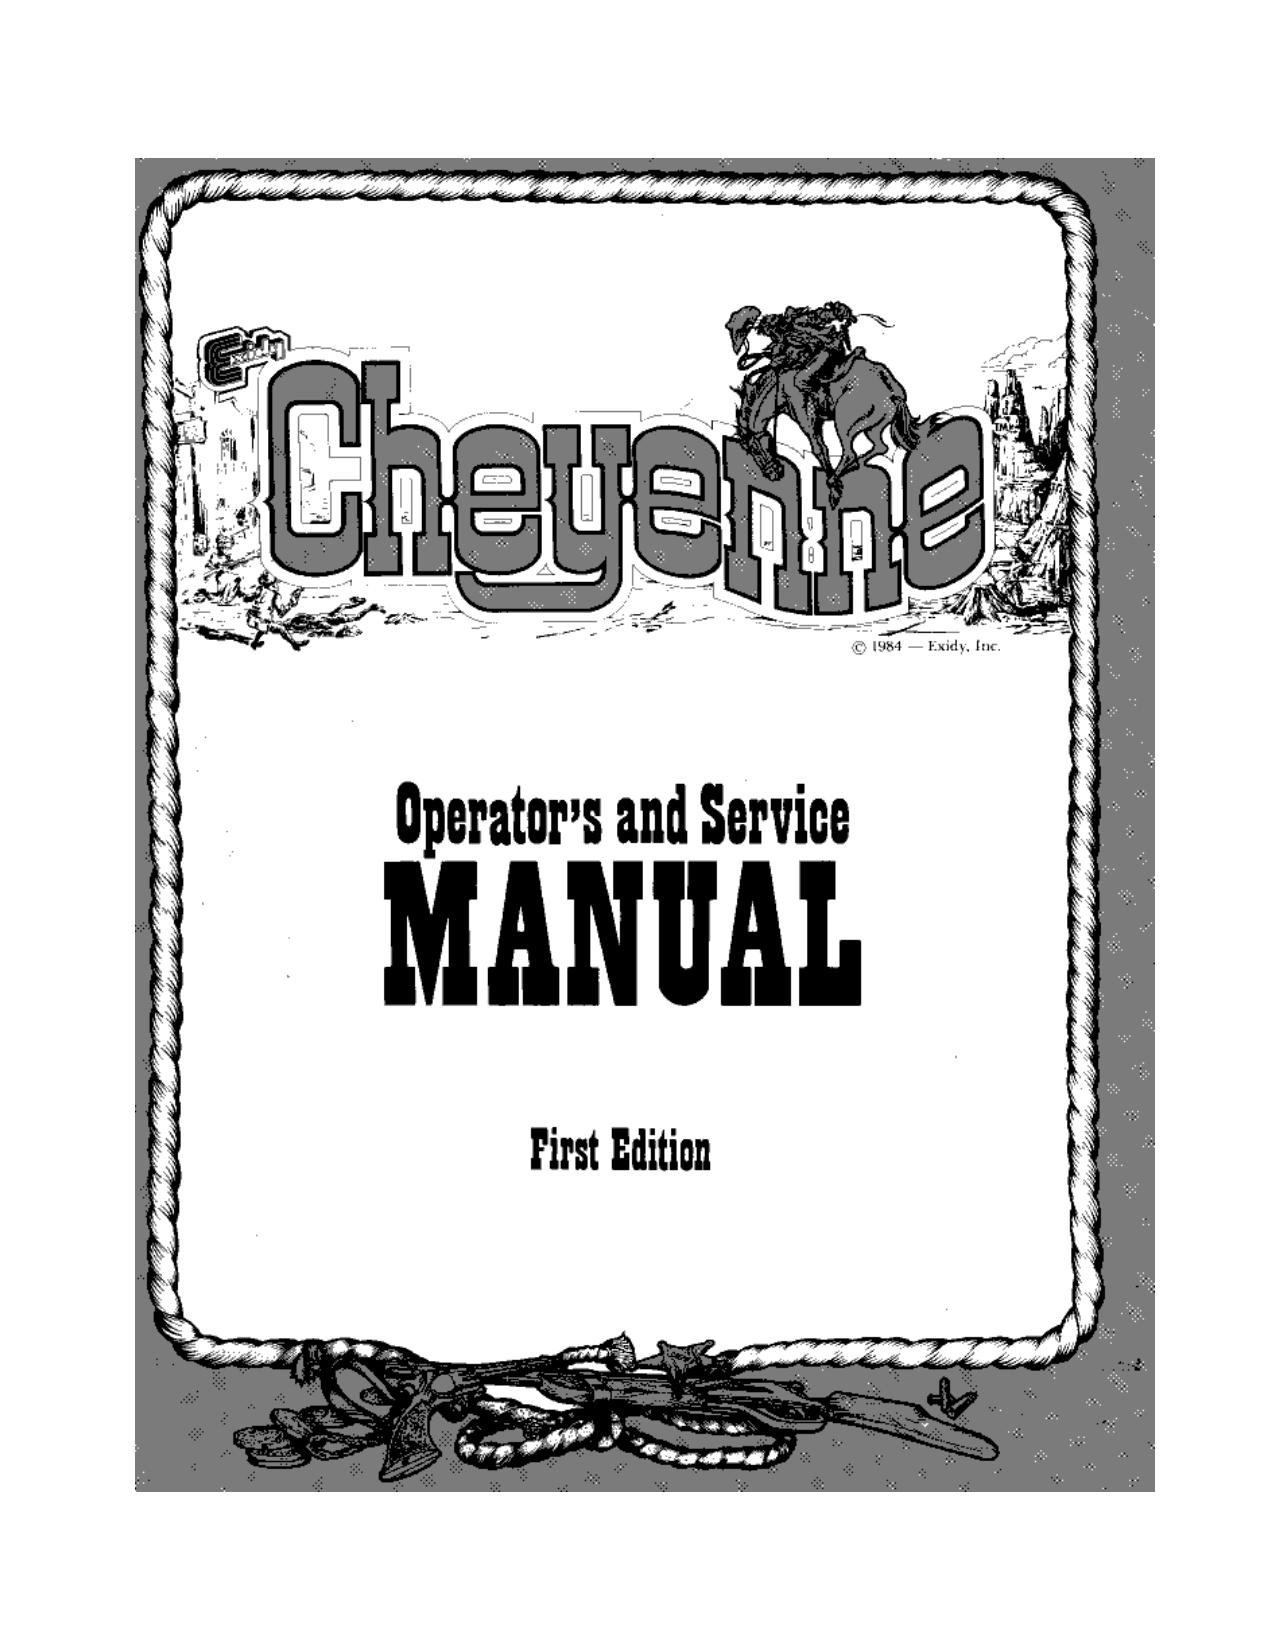 Cheyenne Manual